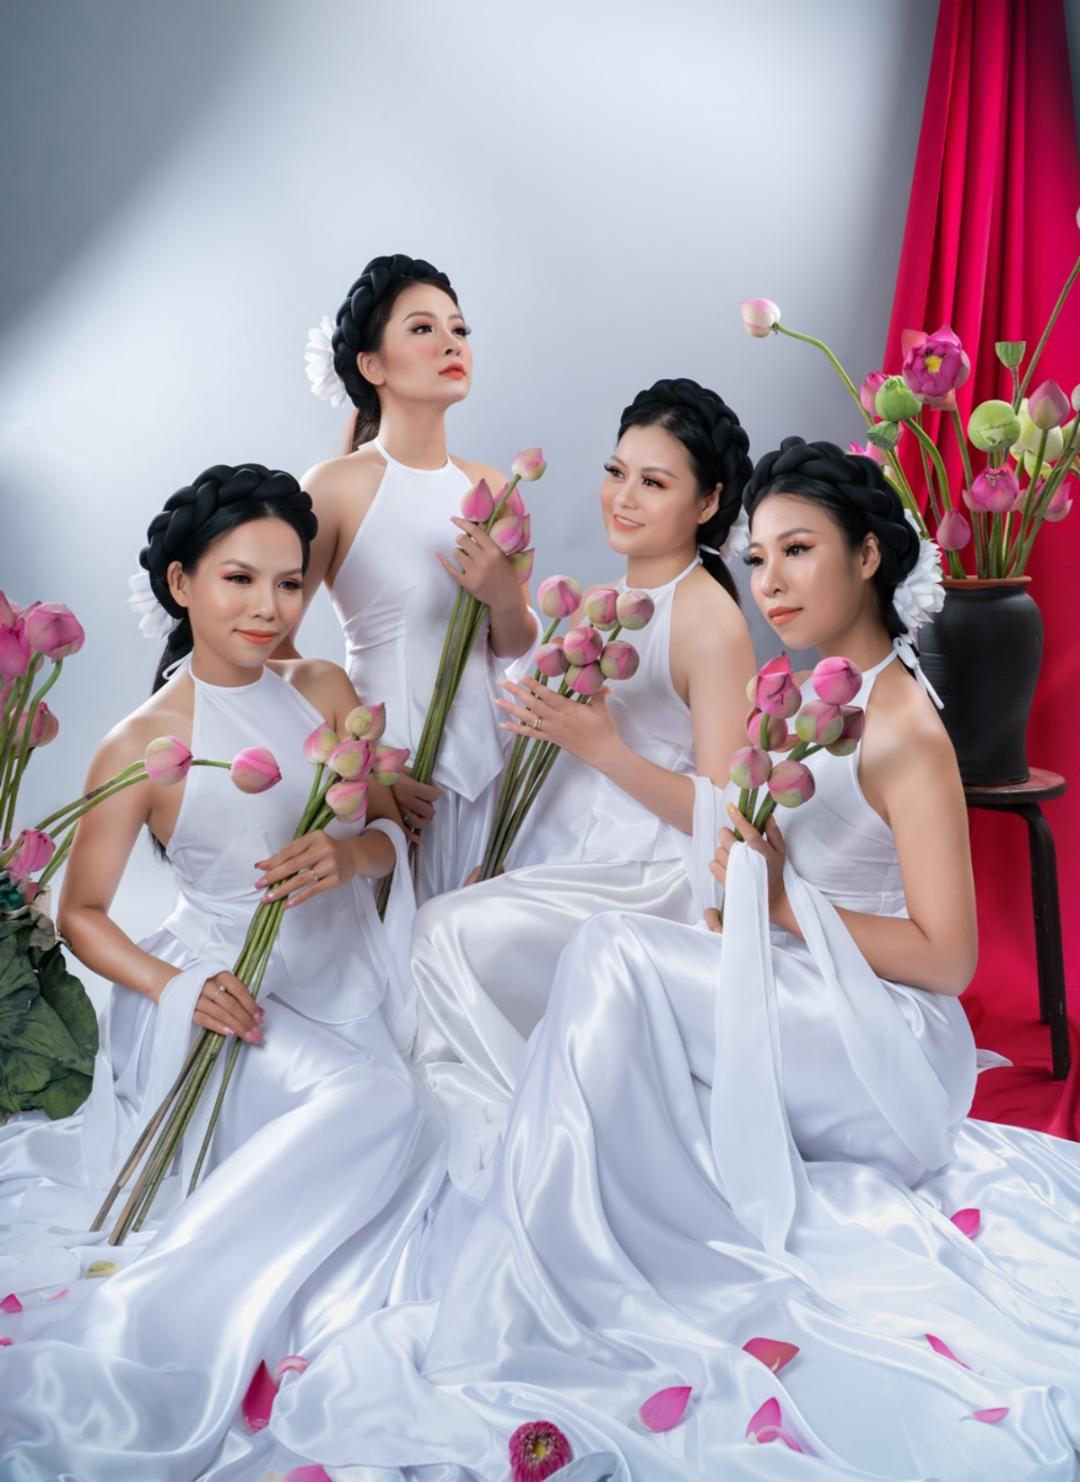 r nhóm sen việt1 Nhóm Sen Việt ra mắt ca khúc mới “Miền quê dấu yêu”